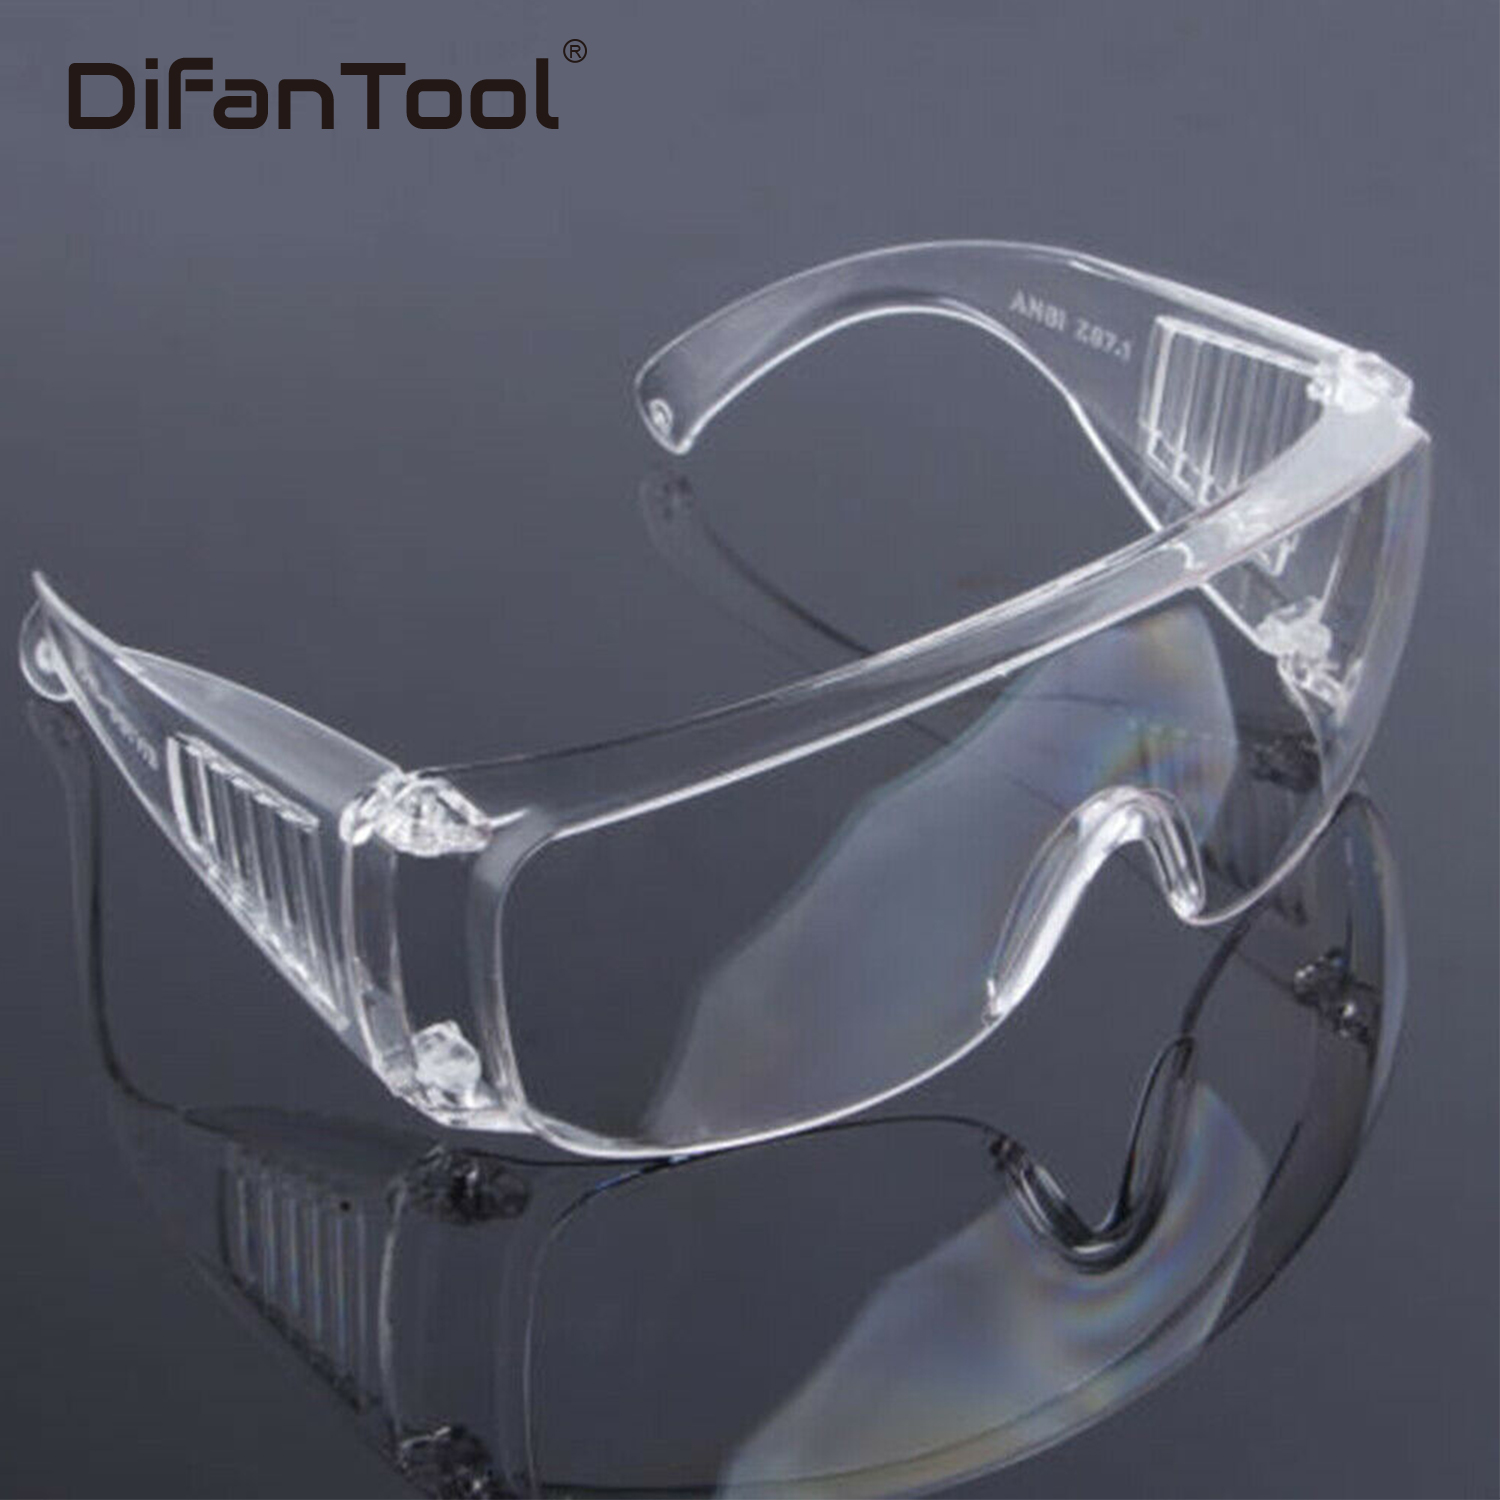 Очки резиновые защитные. Очки защитные spectacles cr01, transparent. Очк304 (о-13011) очки защитные открытые (прозрачные). Очки защитные clean+safe оранжевые HB-s03aor. Очки hogies стоматологические.